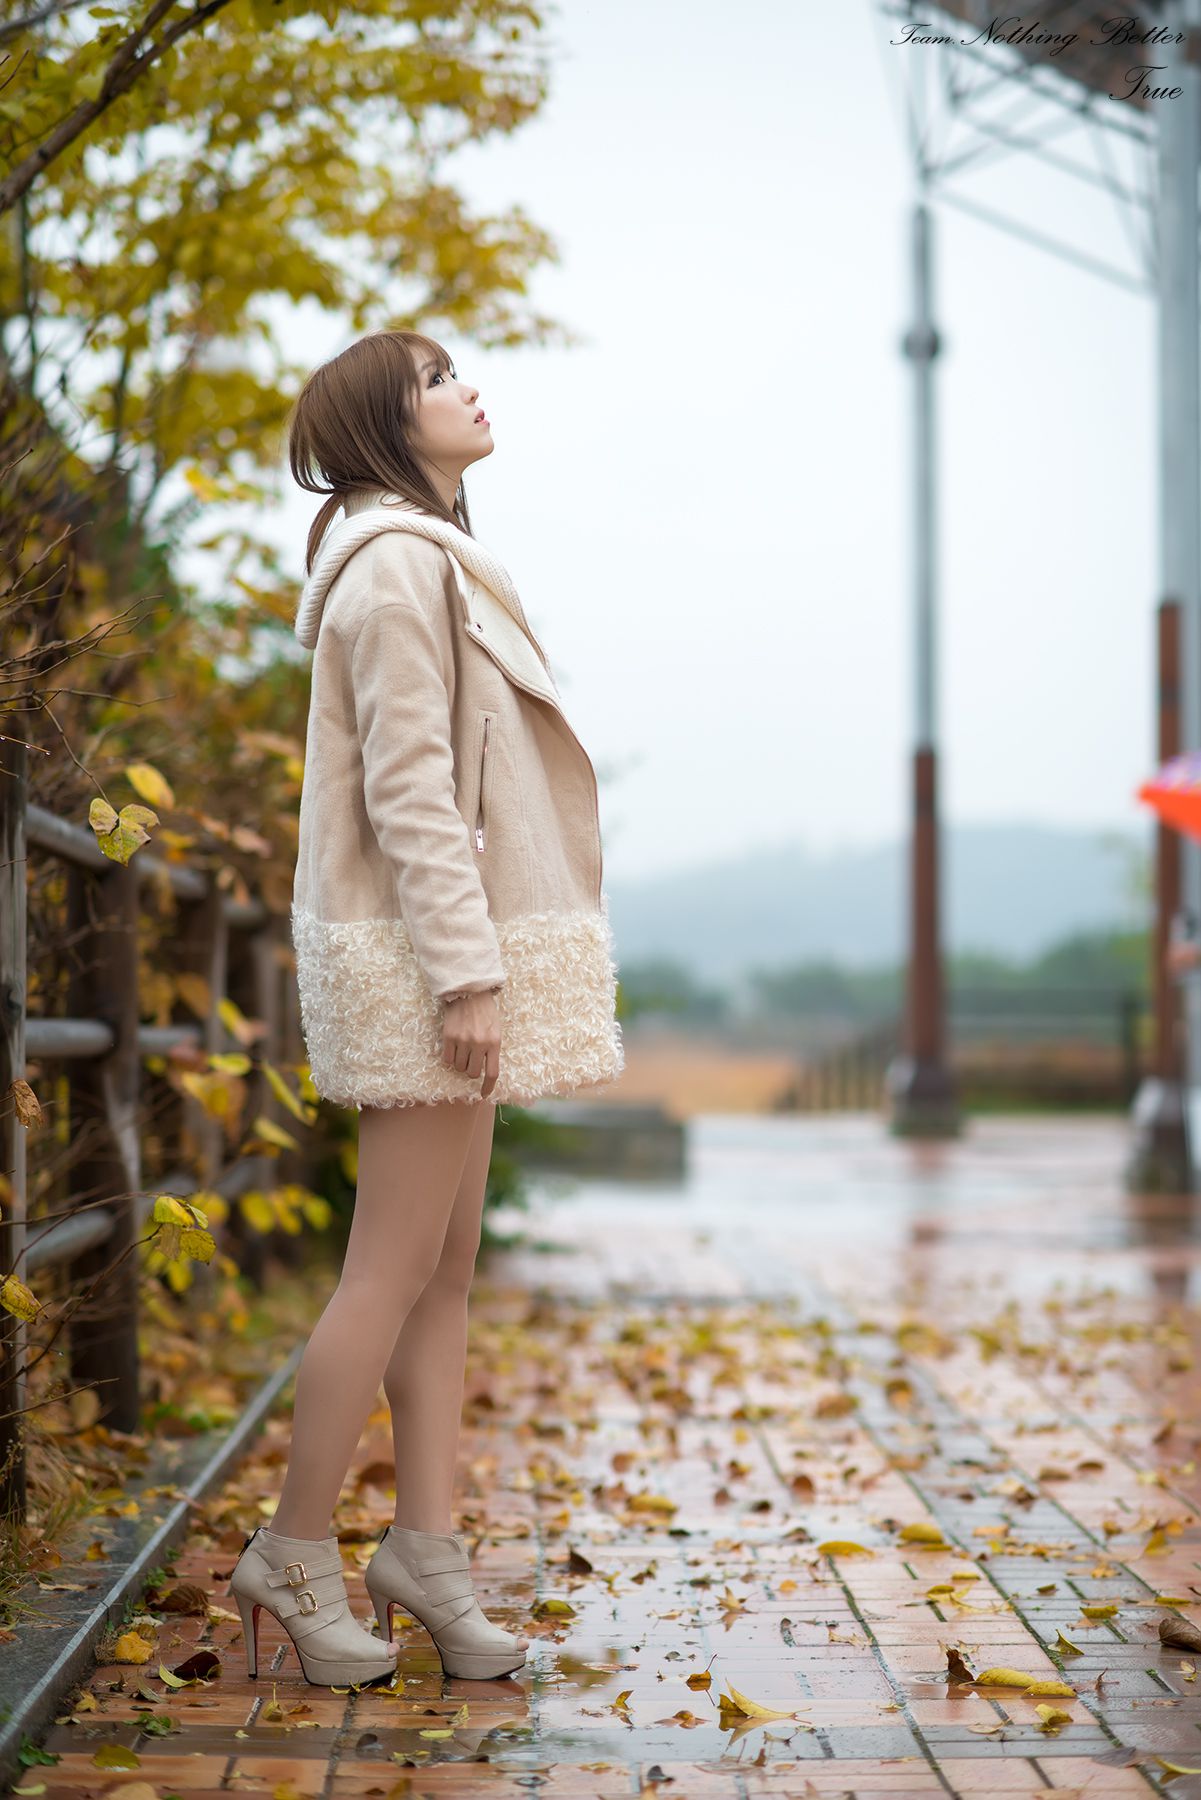 极品韩国美女李恩慧《下雨天街拍》  第3张